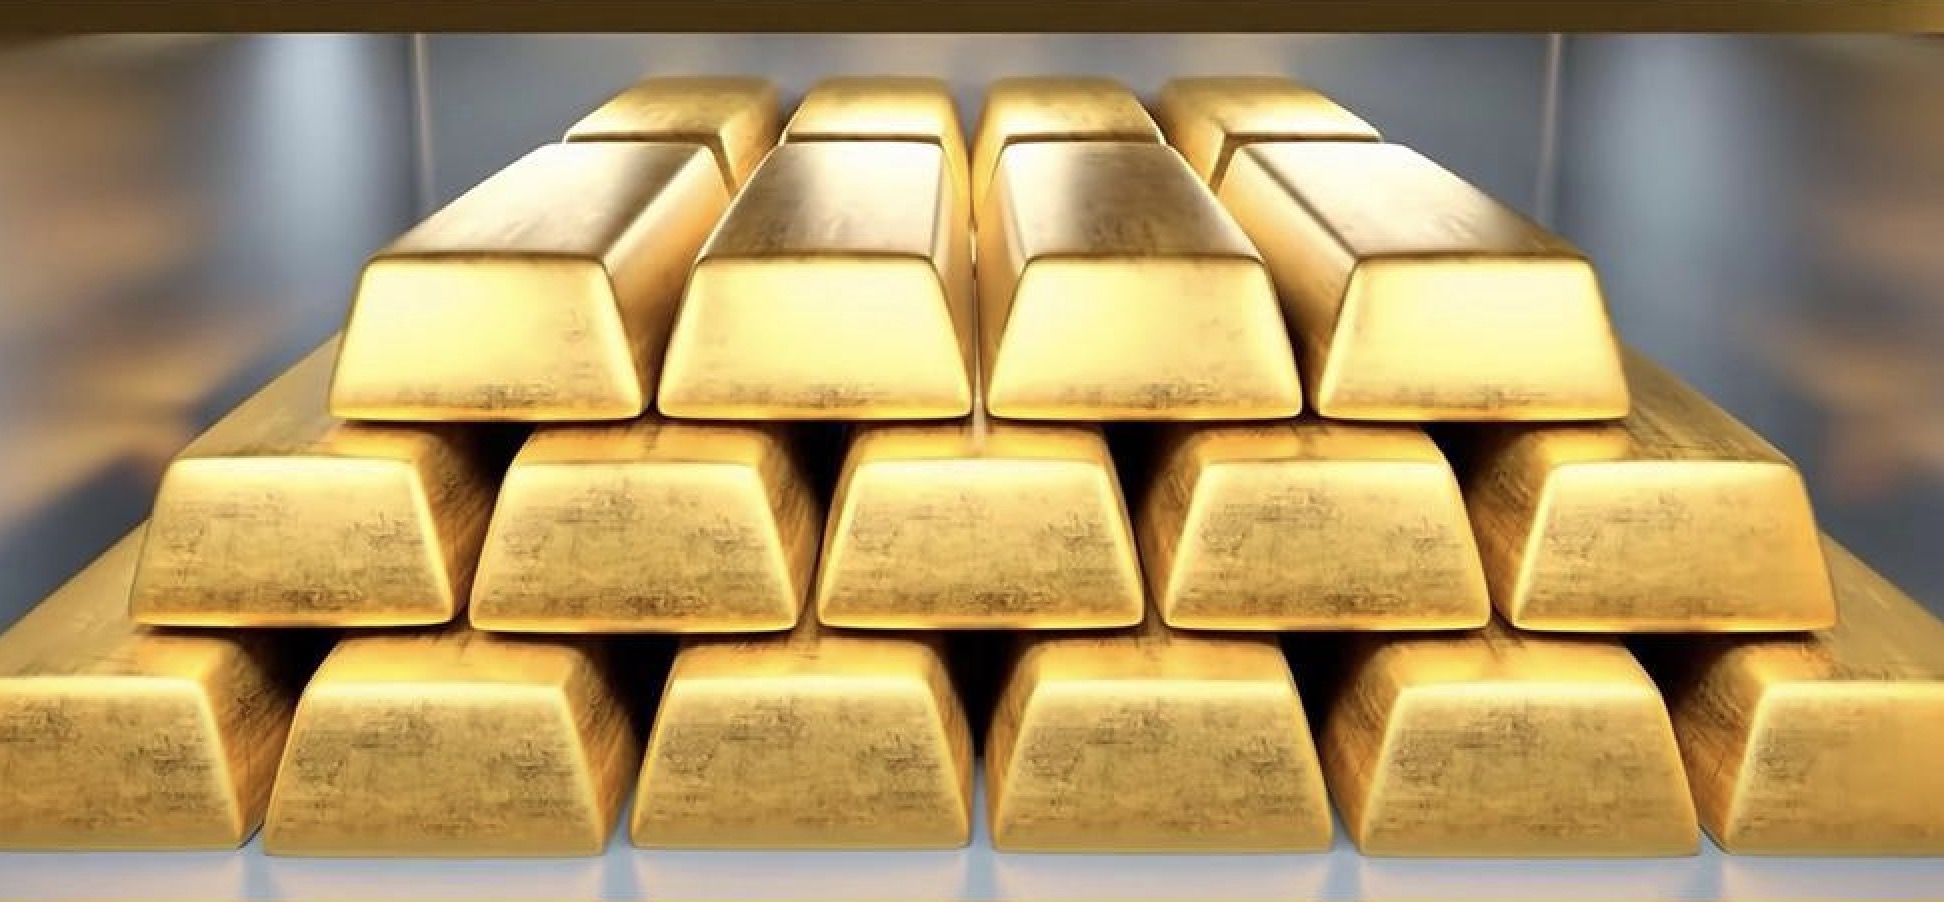 คำเตือนการซื้อขายทองคำ: ราคาทองคำร่วงลงหลังจากแตะระดับสูงสุดใหม่ตลอดเวลา จะสามารถขึ้นต่อไปได้ในอนาคตหรือไม่?